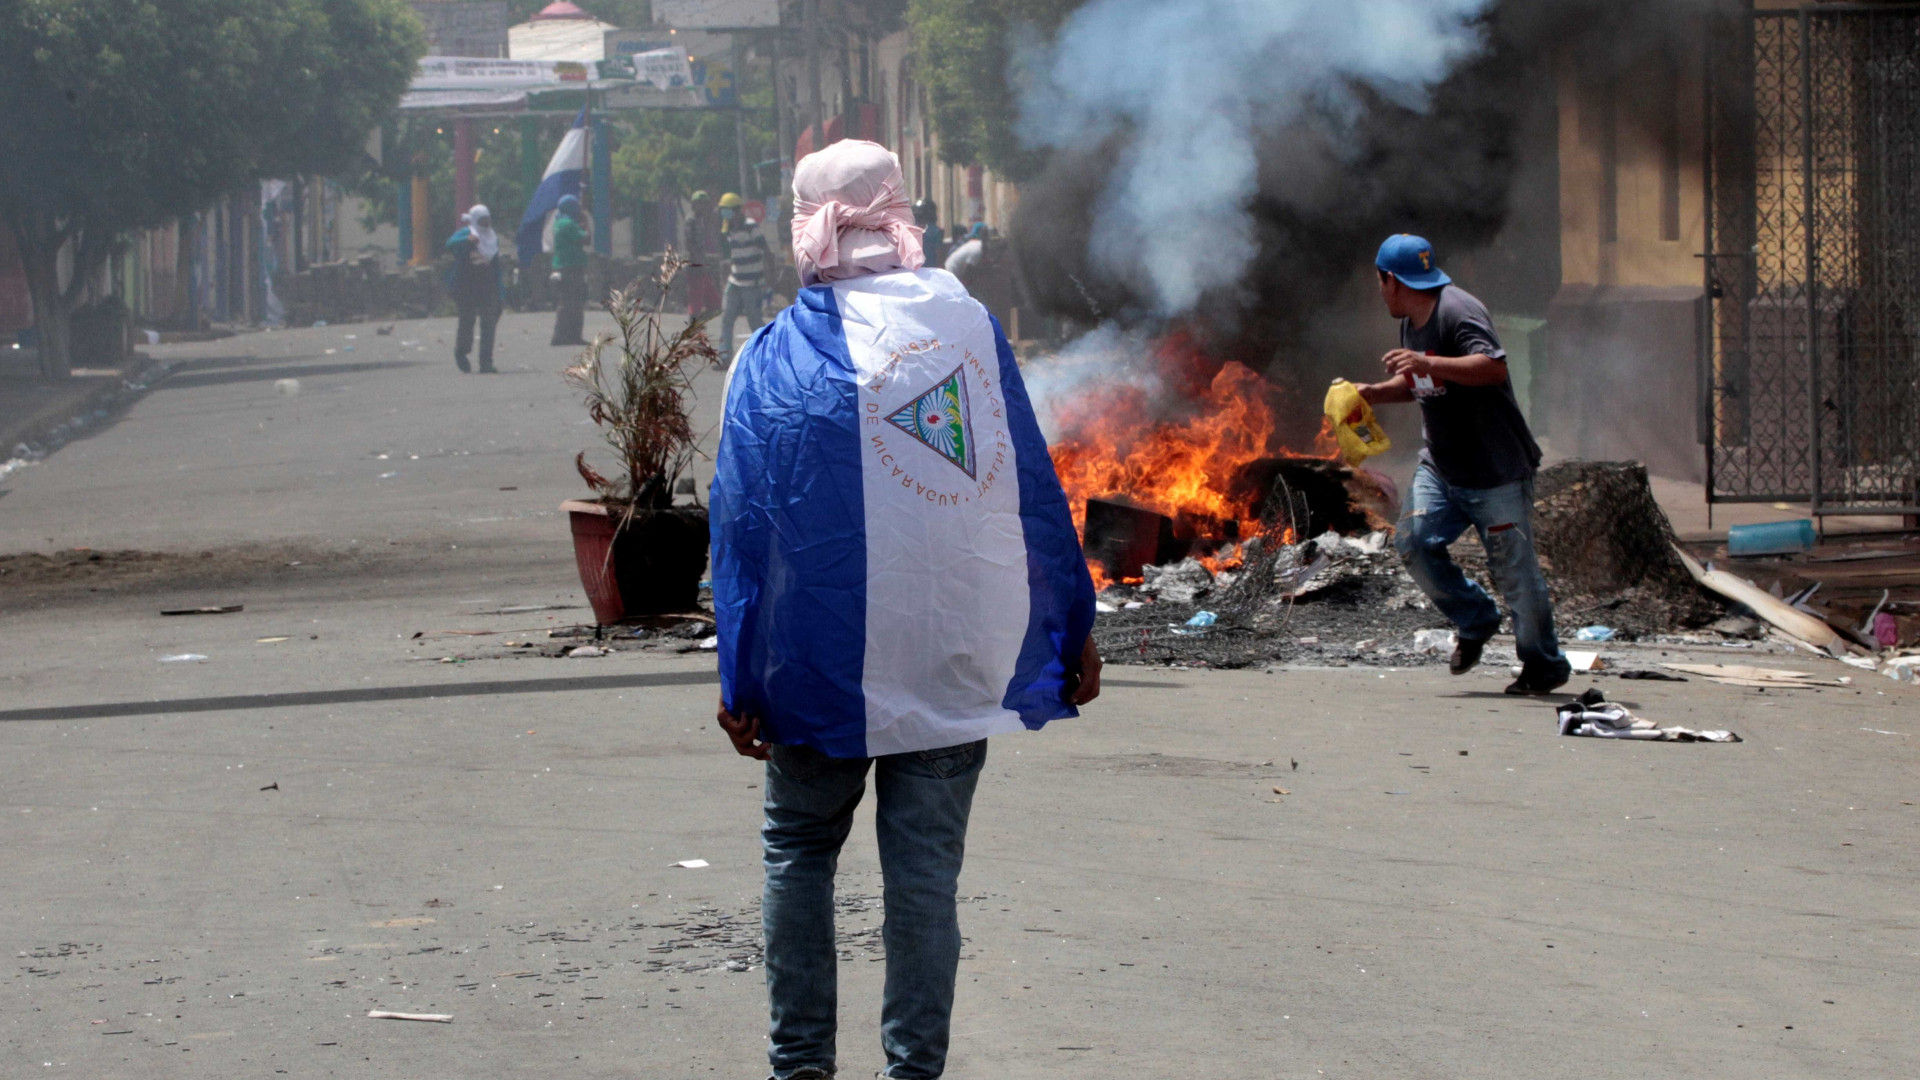 Ortega pede que comissão da OEA investigue mortes na Nicarágua